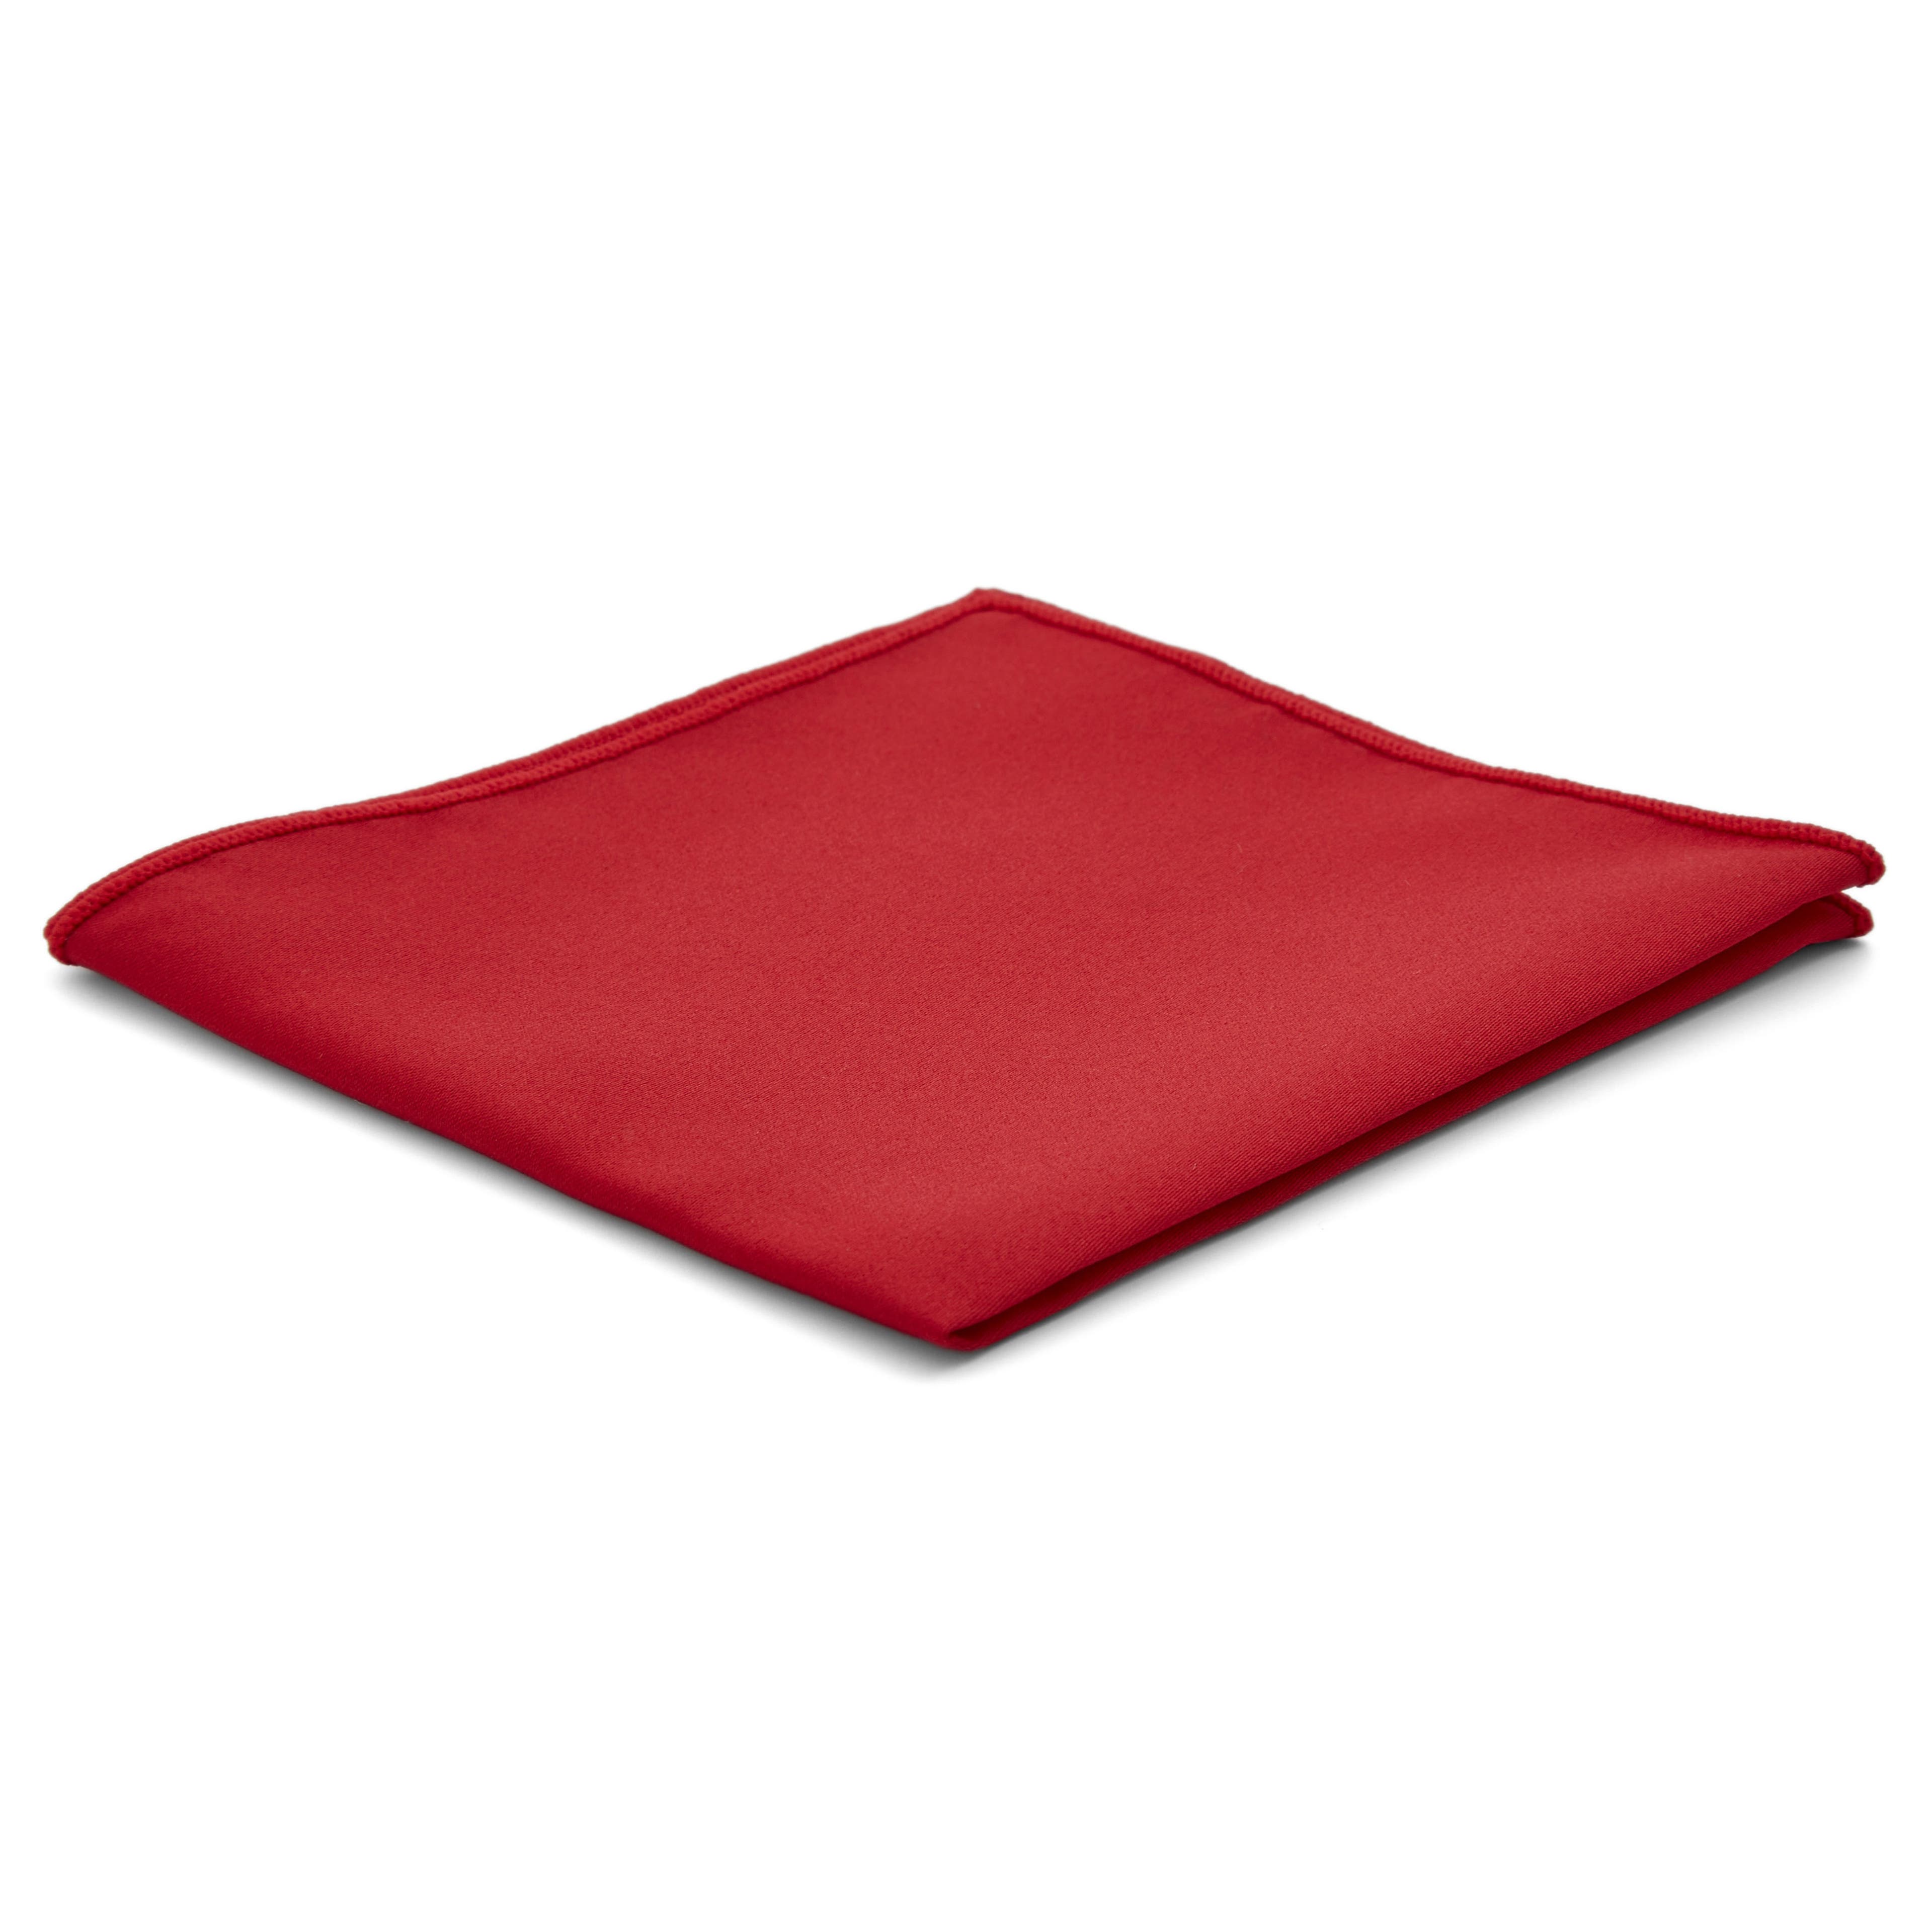 Red Basic Pocket Square